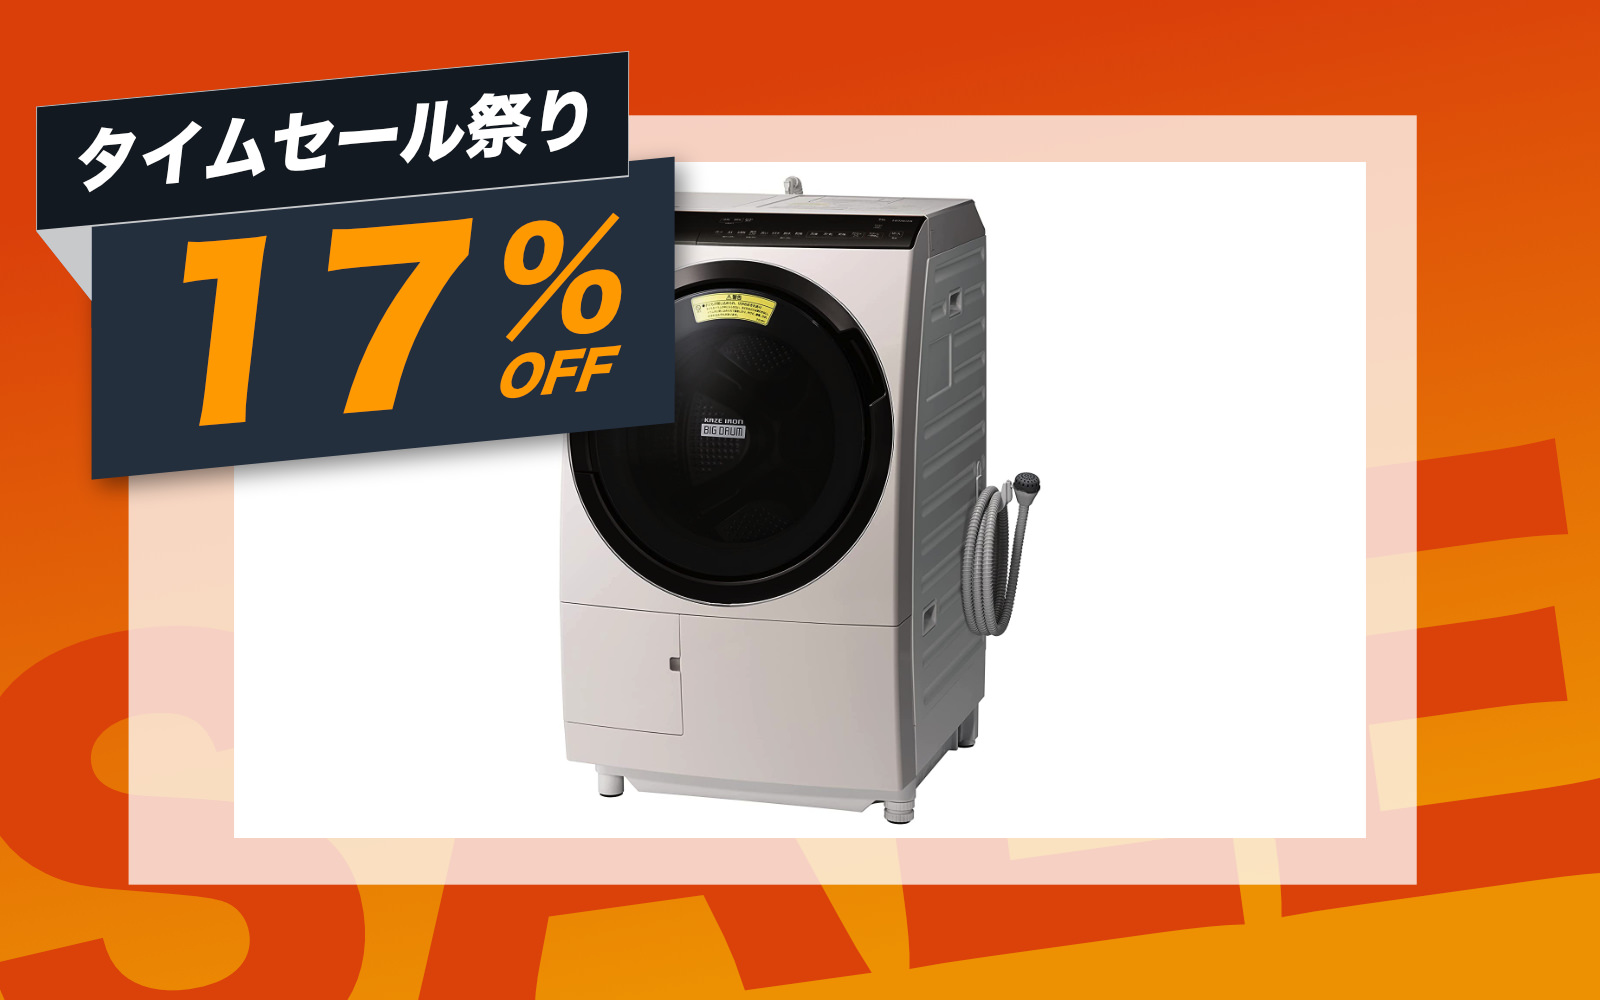 Hitachi Washer and Dryer machine